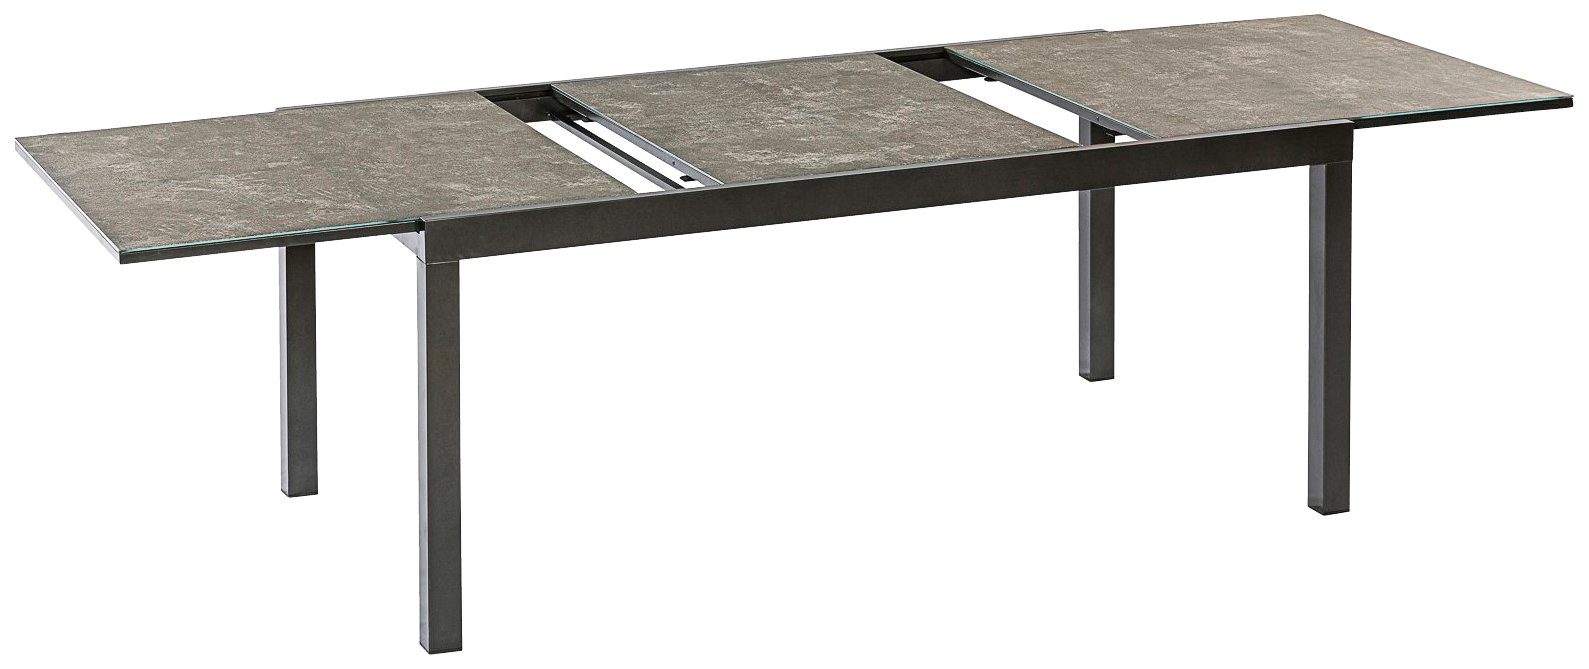 MERXX Gartentisch Semi AZ-Tisch, cm 100x180